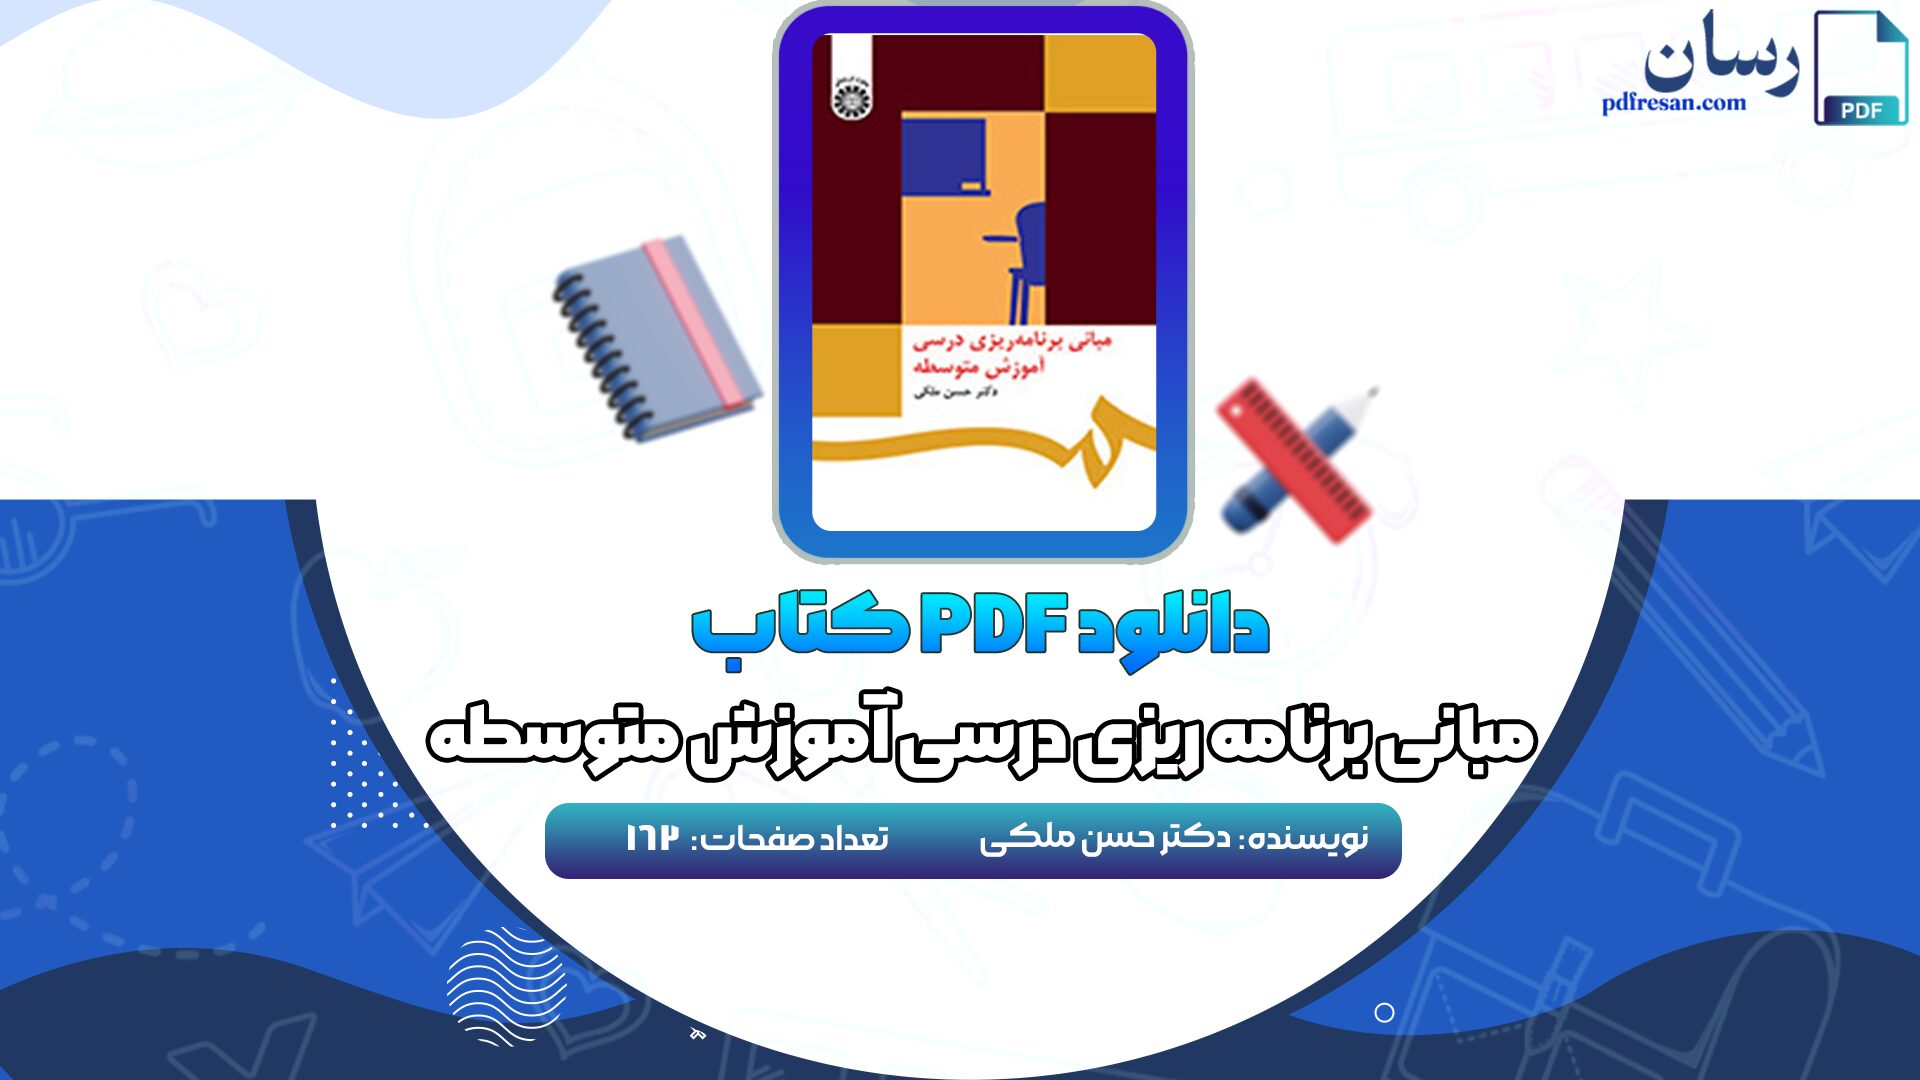 دانلود کتاب مبانی برنامه ریزی درسی آموزش متوسطه دکتر حسن ملکی PDF